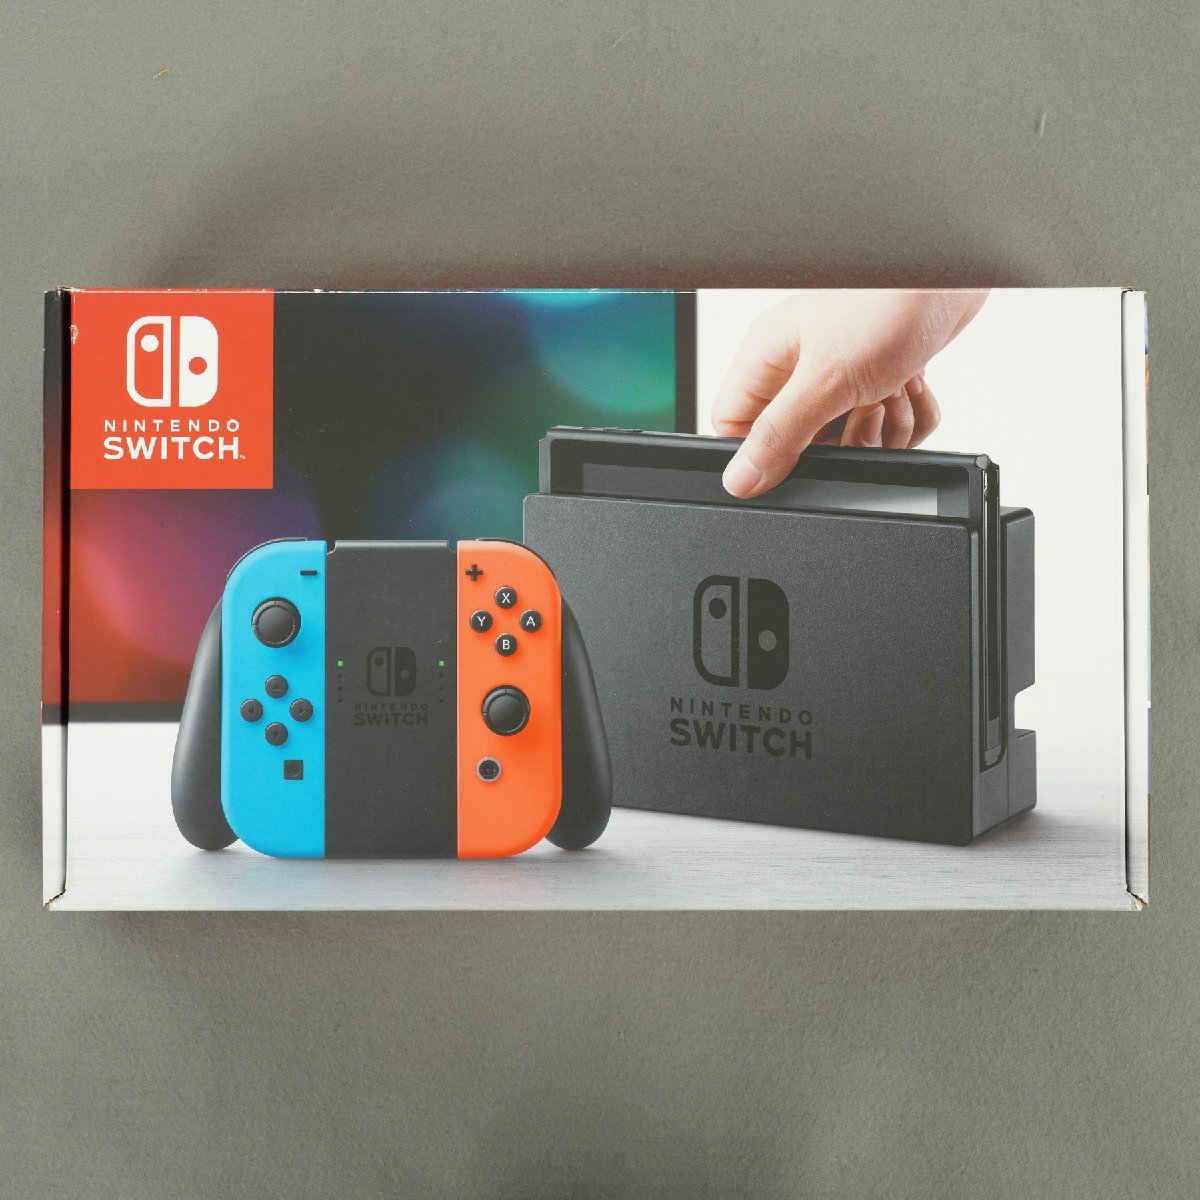 Nintendo Switch ニンテンドー スイッチ HAC-001 2017年製 未対策機 Joy-Con (L) ネオンブルー/ (R) ネオンレッド 本体一式 [R11832]のサムネイル